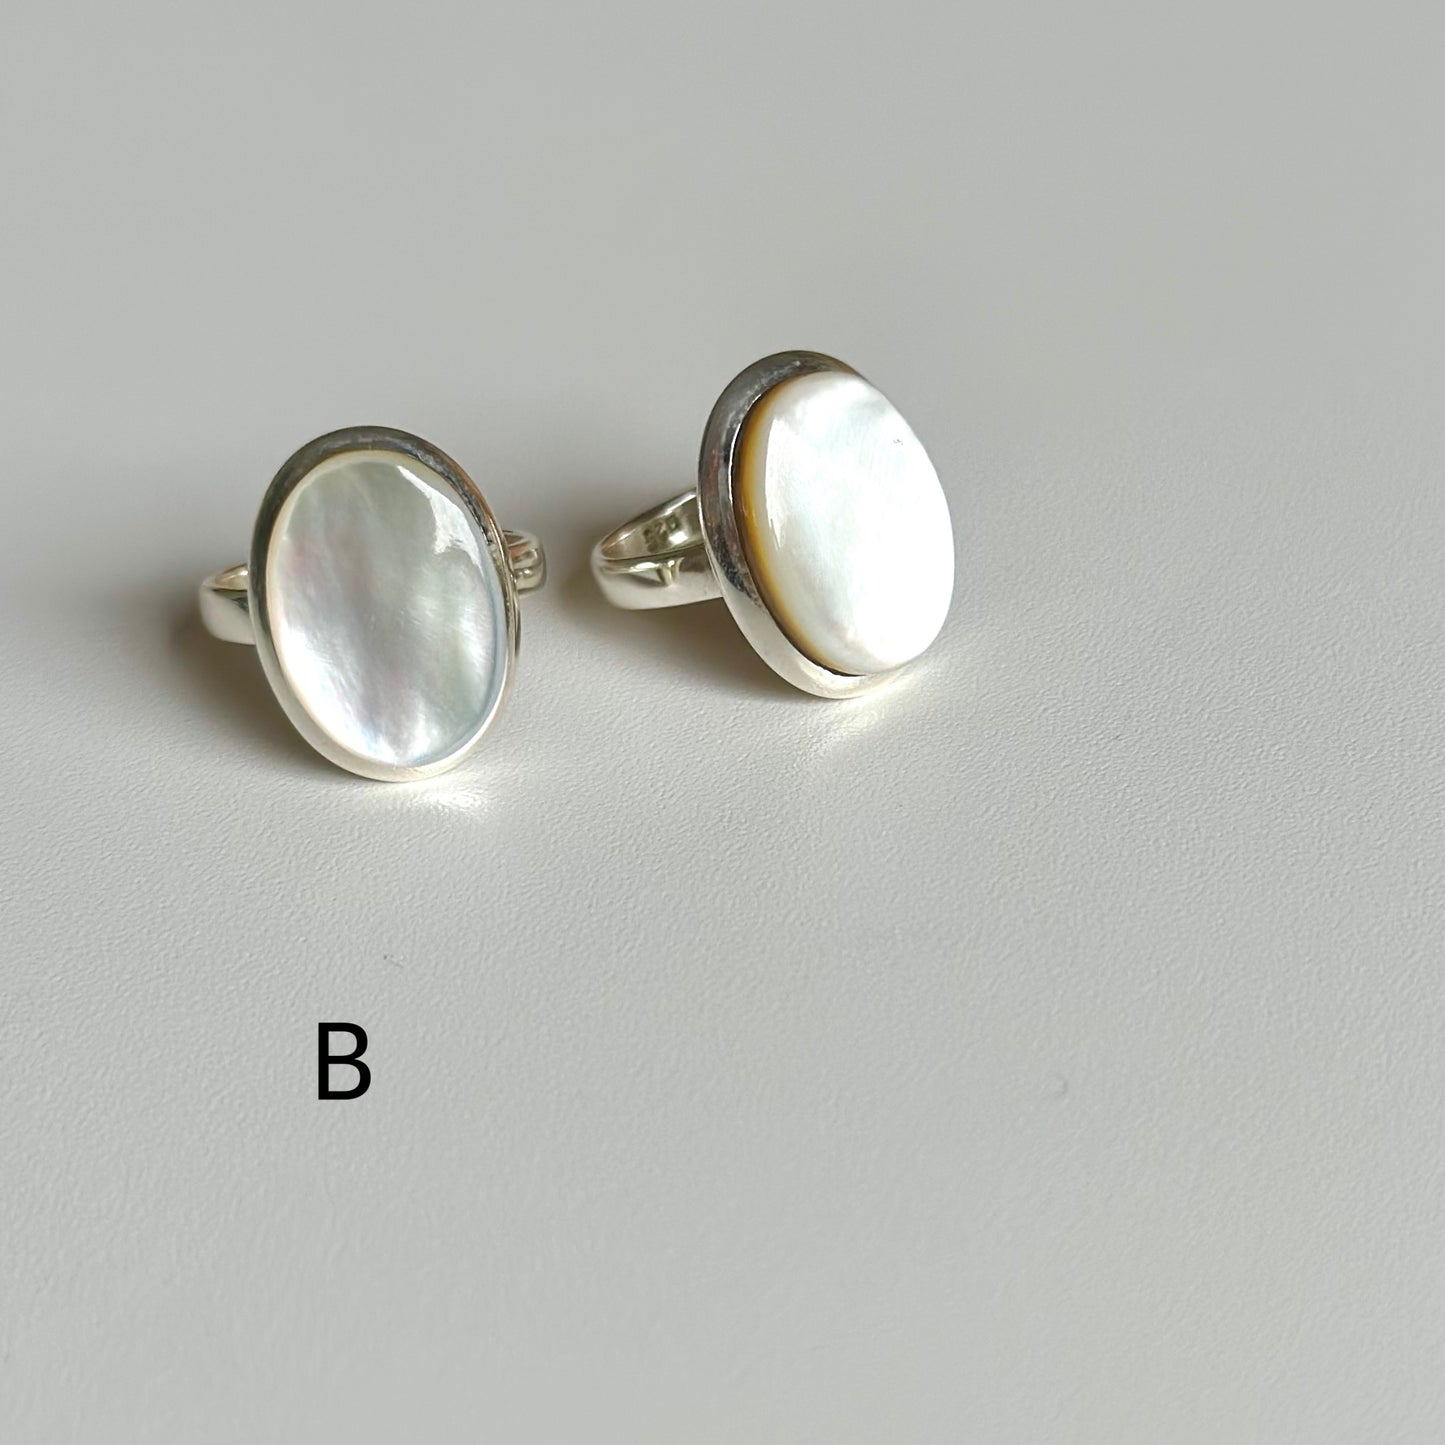 Shell design ring